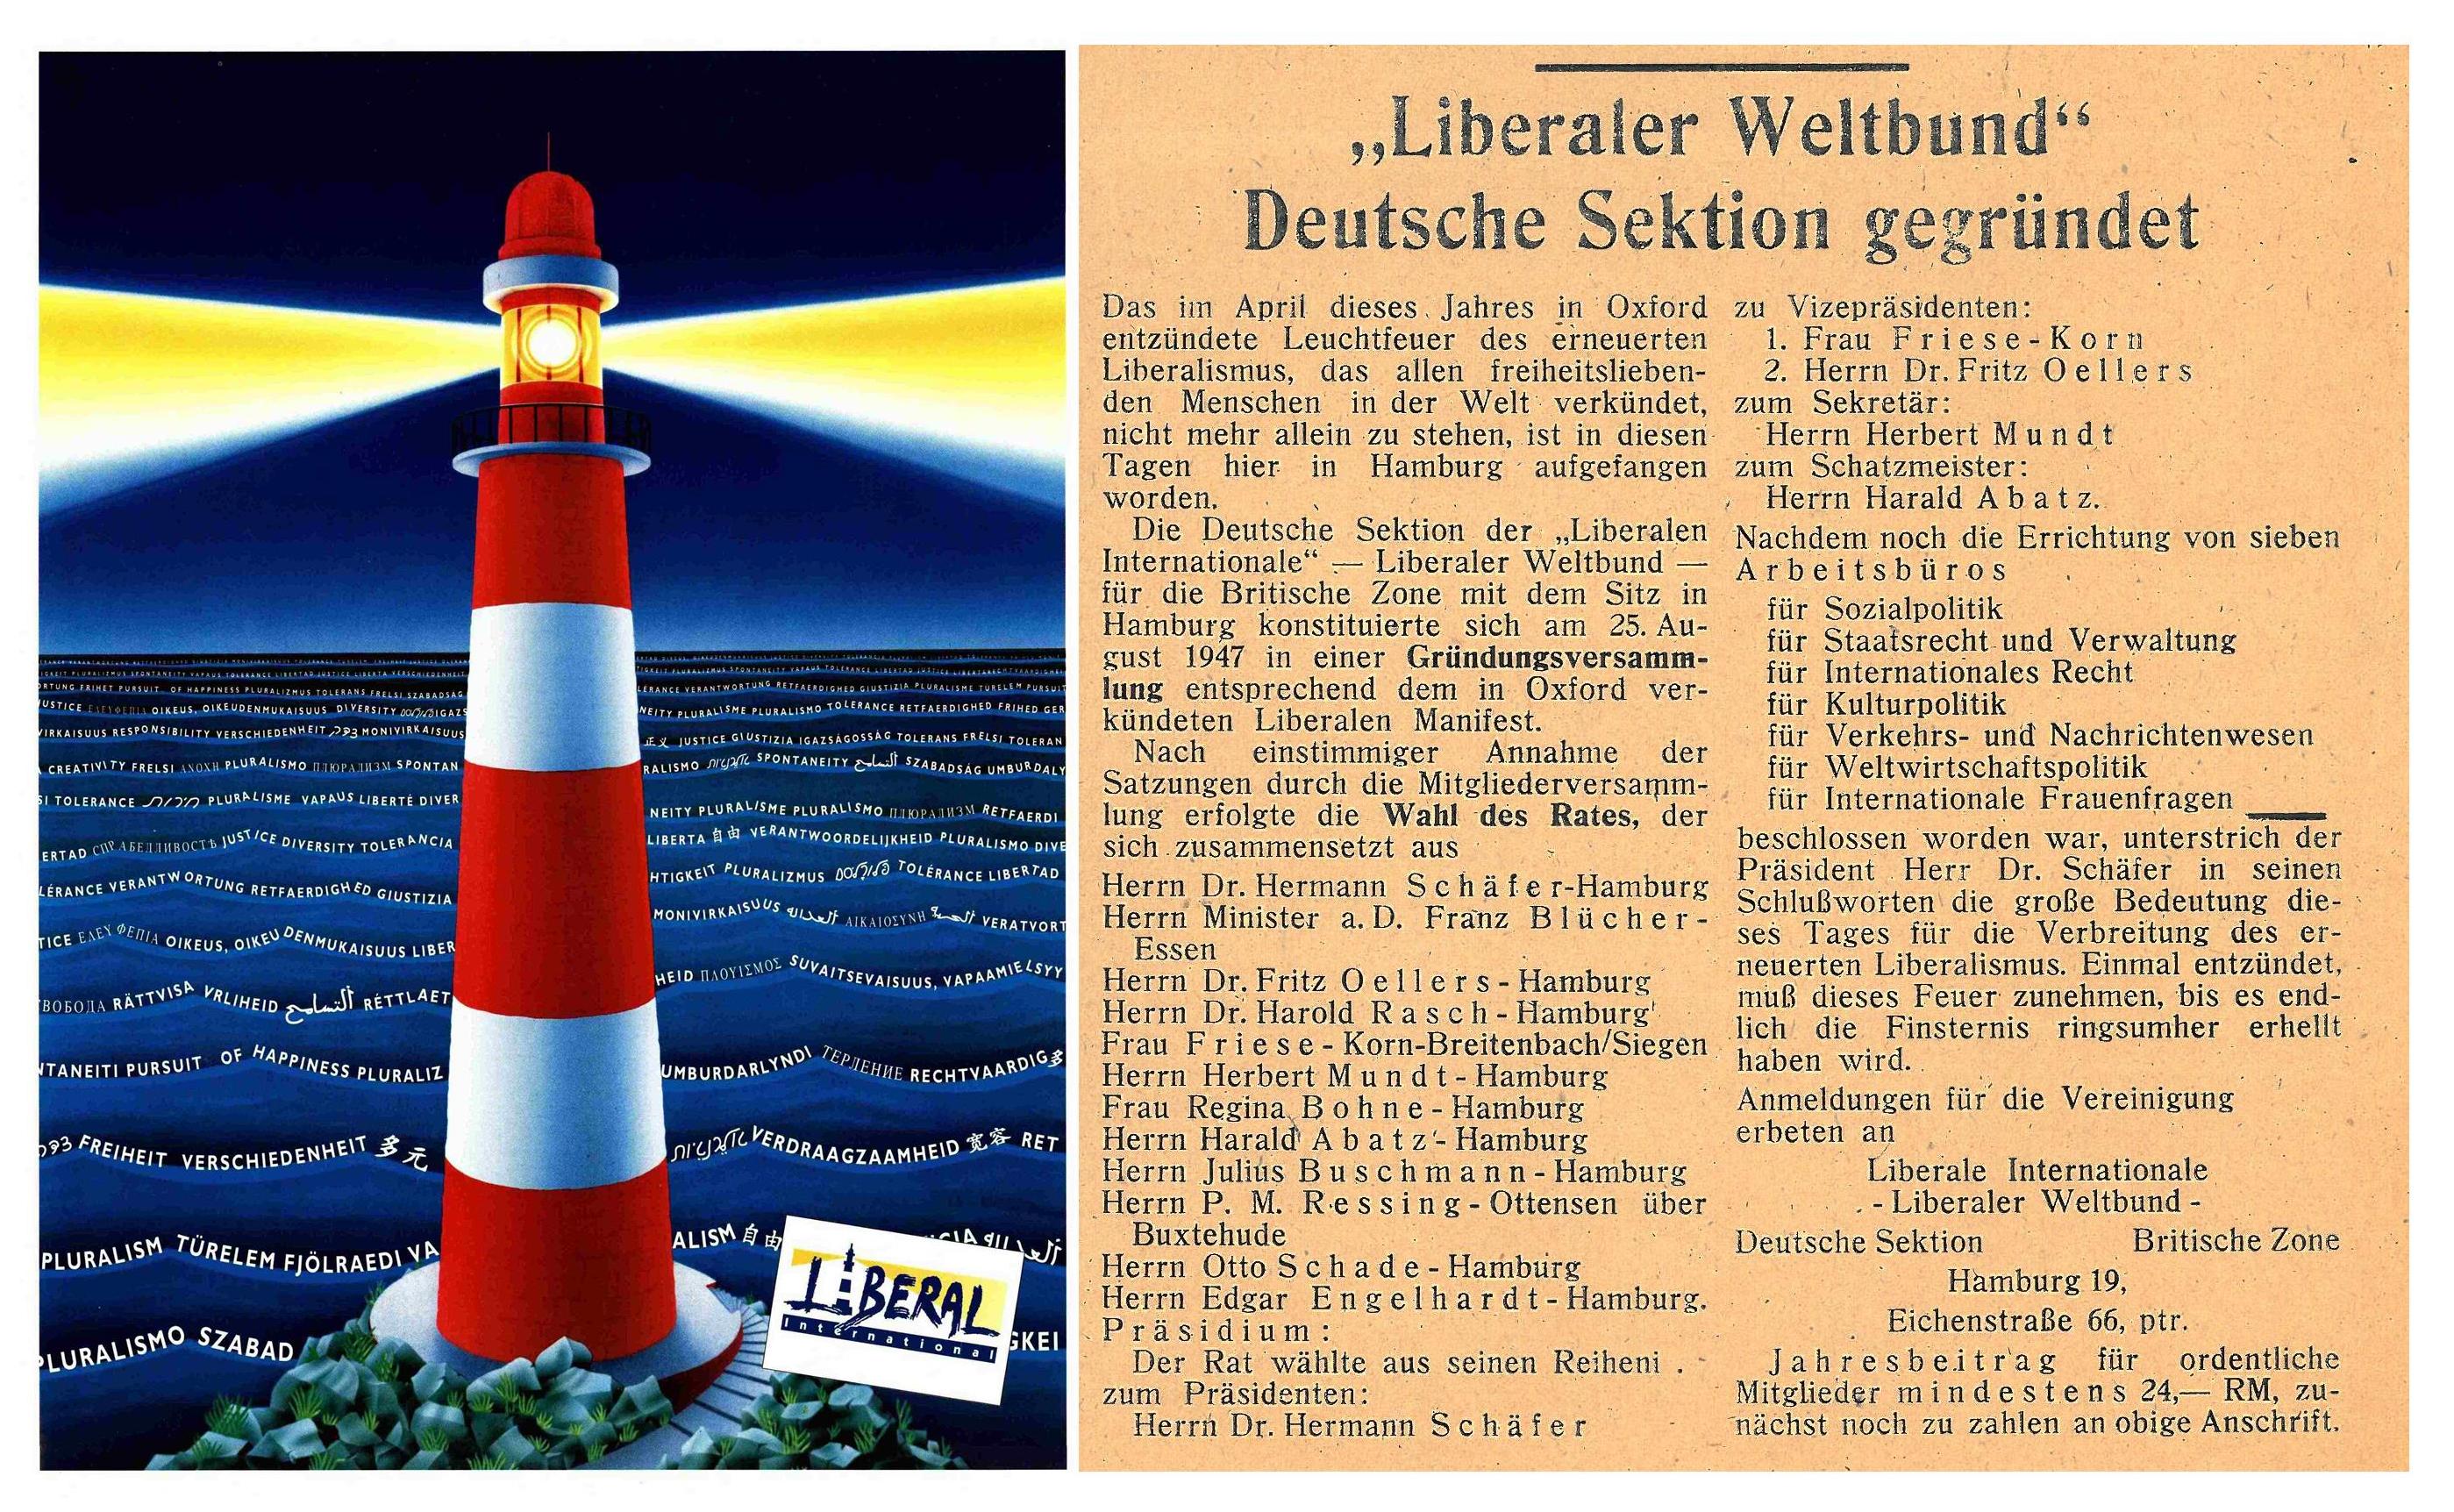 Gründung der Deutschen Sektion der Liberal International